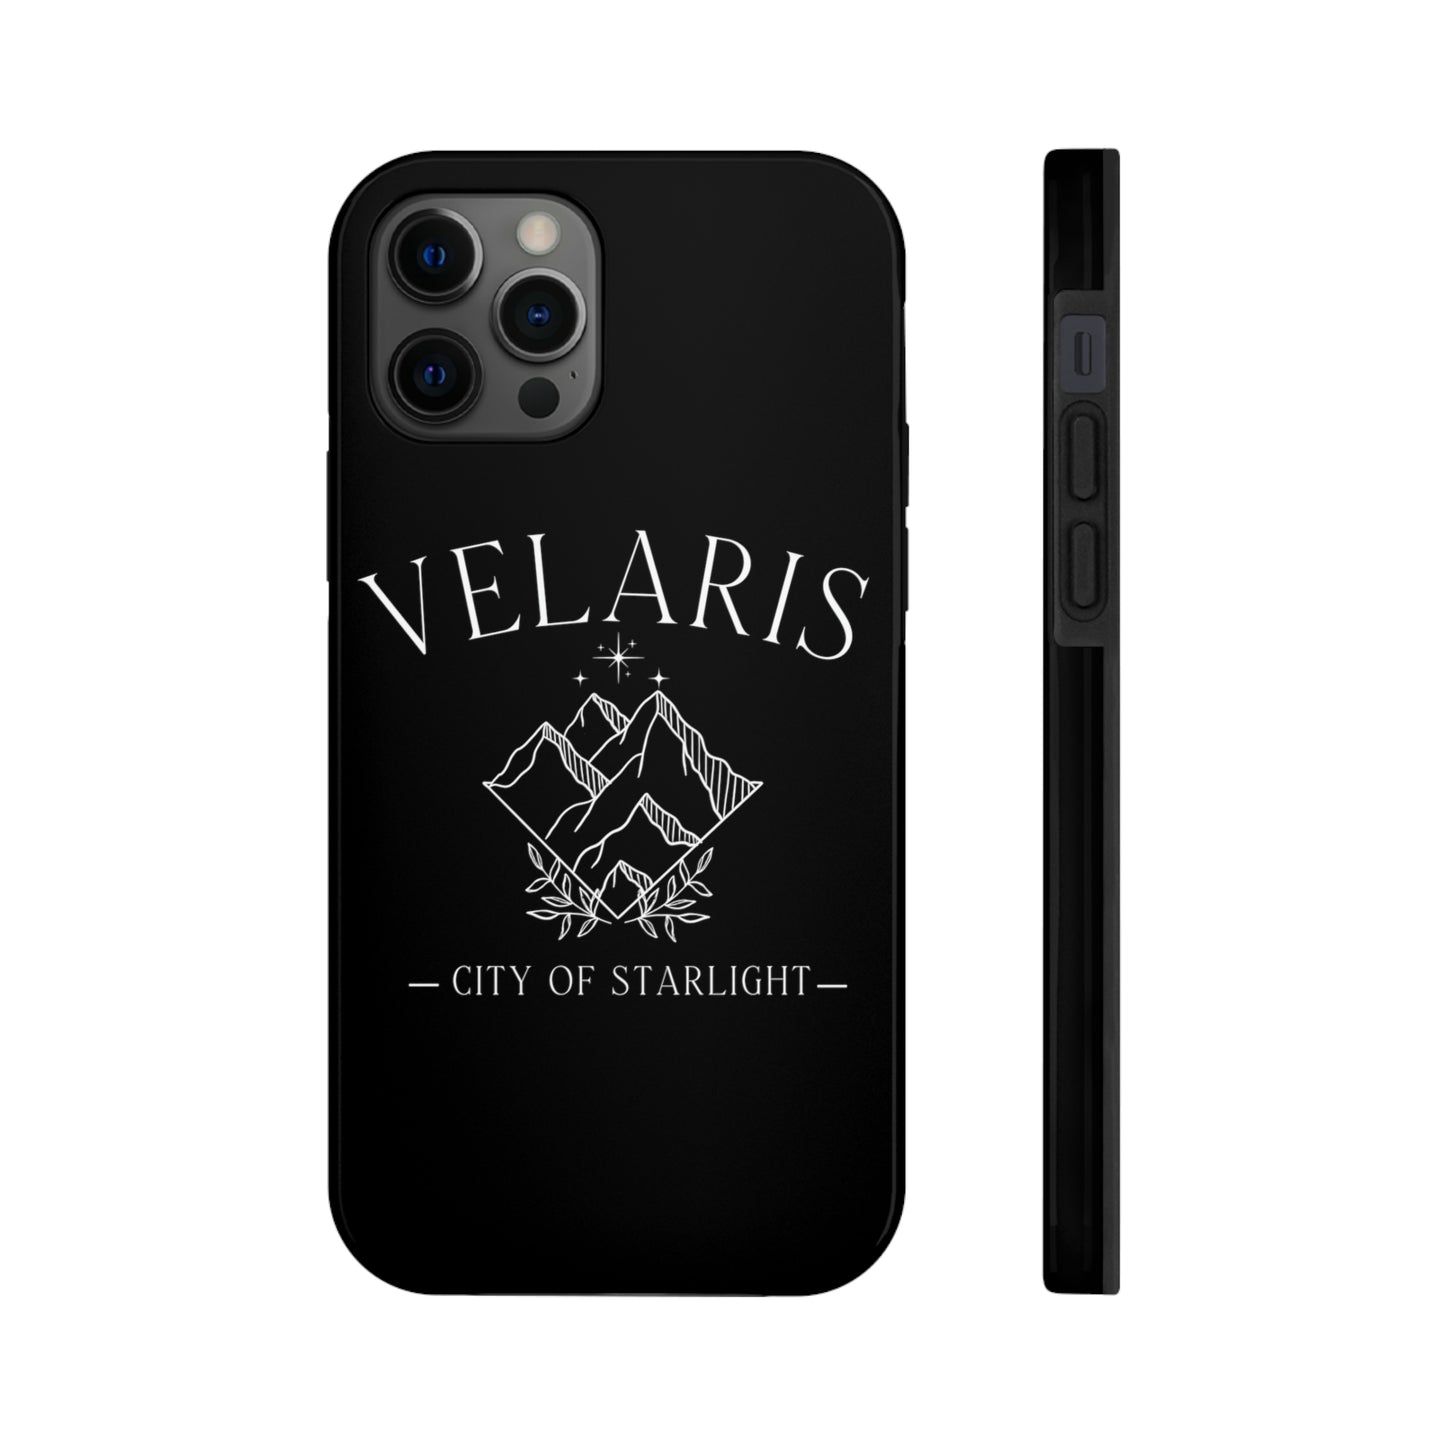 Velaris Phone Cases